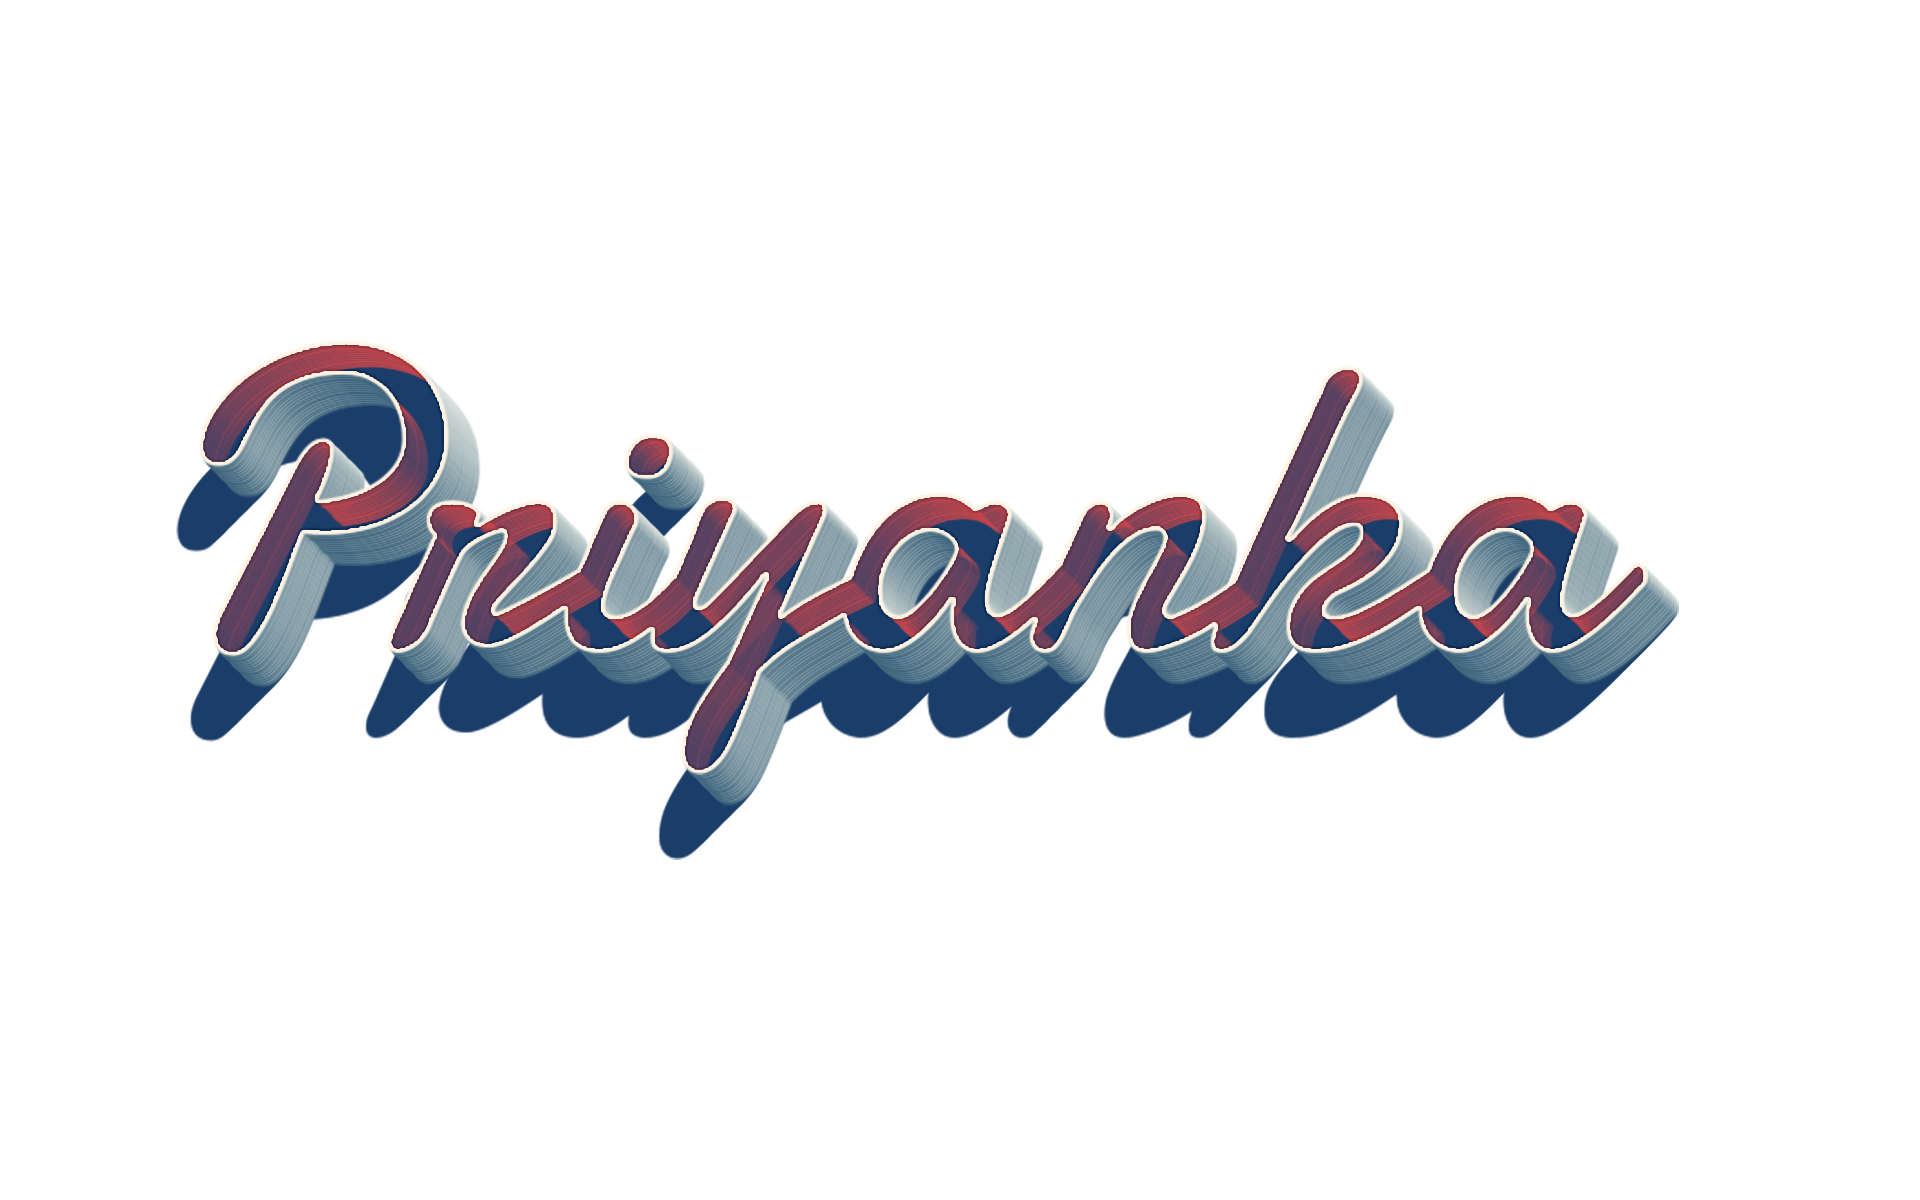 Product Priyanka Brand Chopra Design Logo Font PNG Image